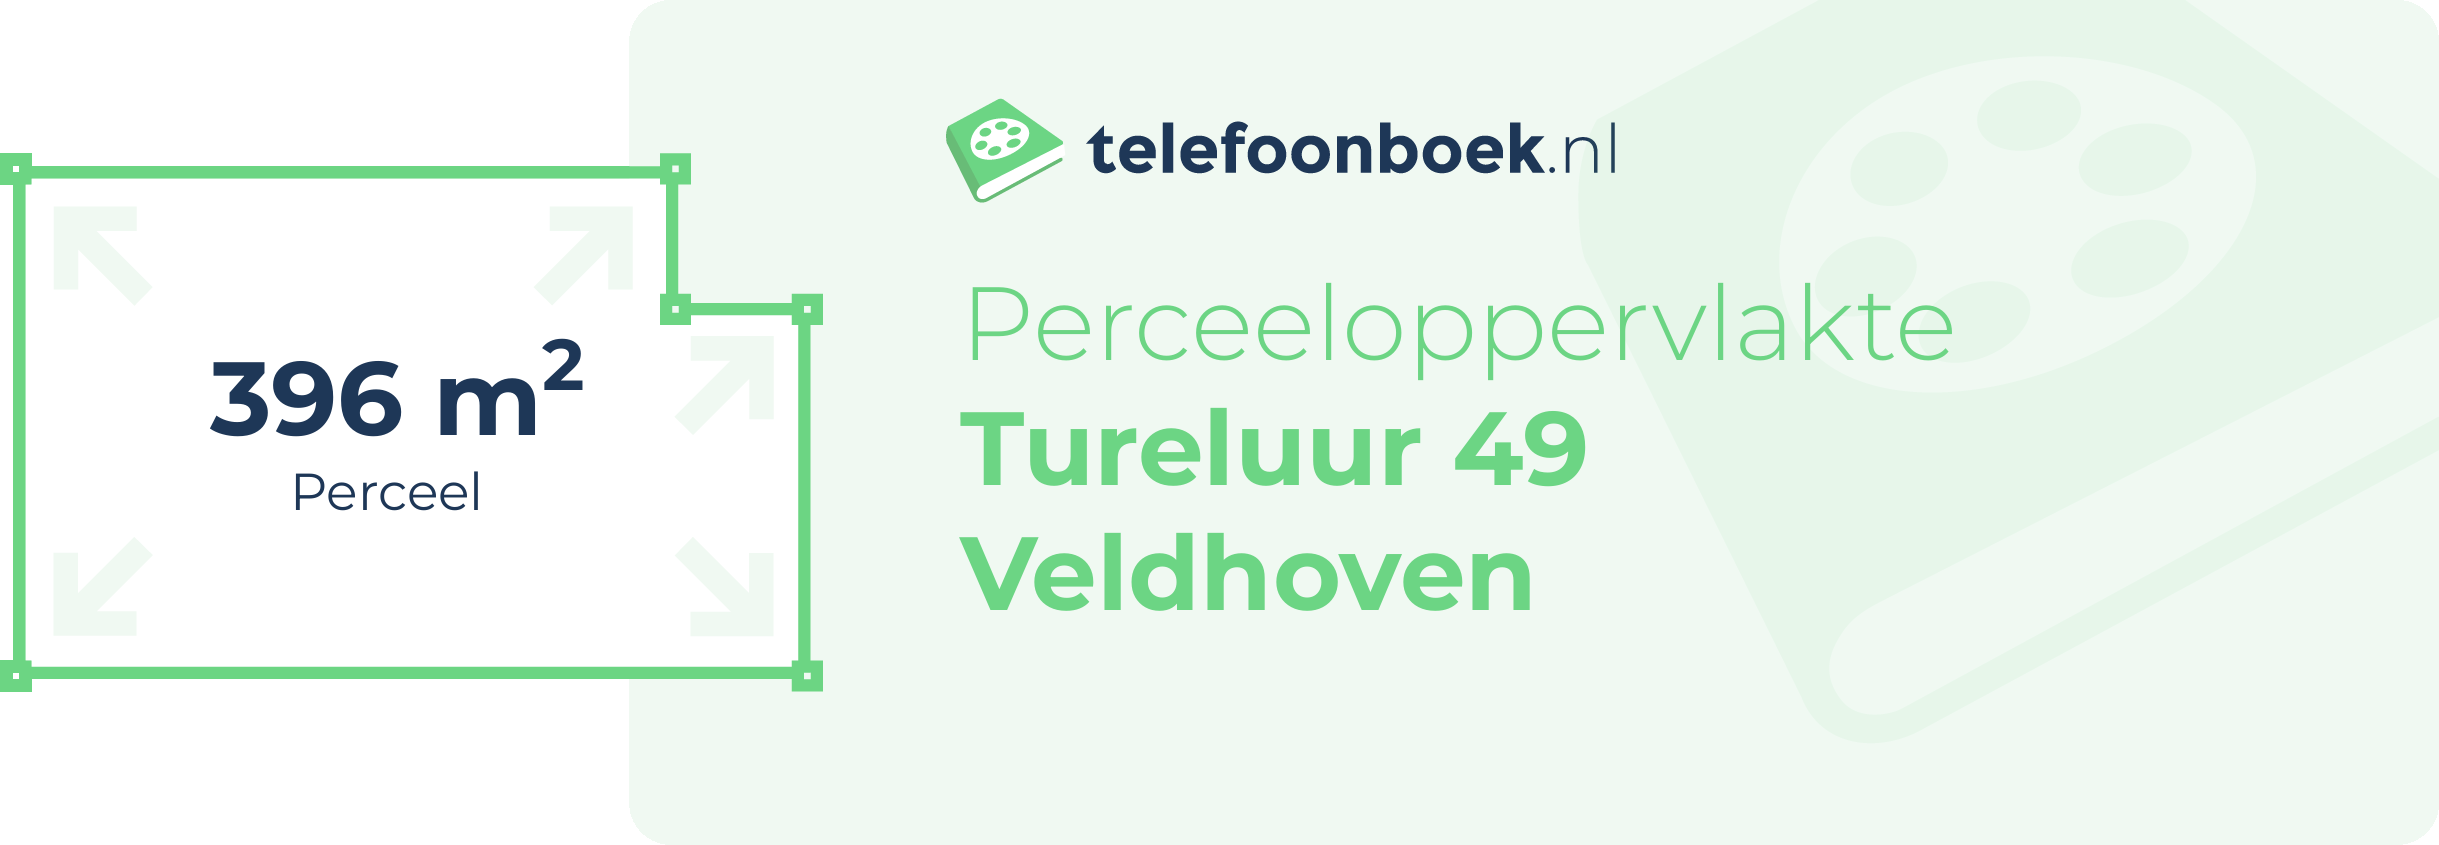 Perceeloppervlakte Tureluur 49 Veldhoven